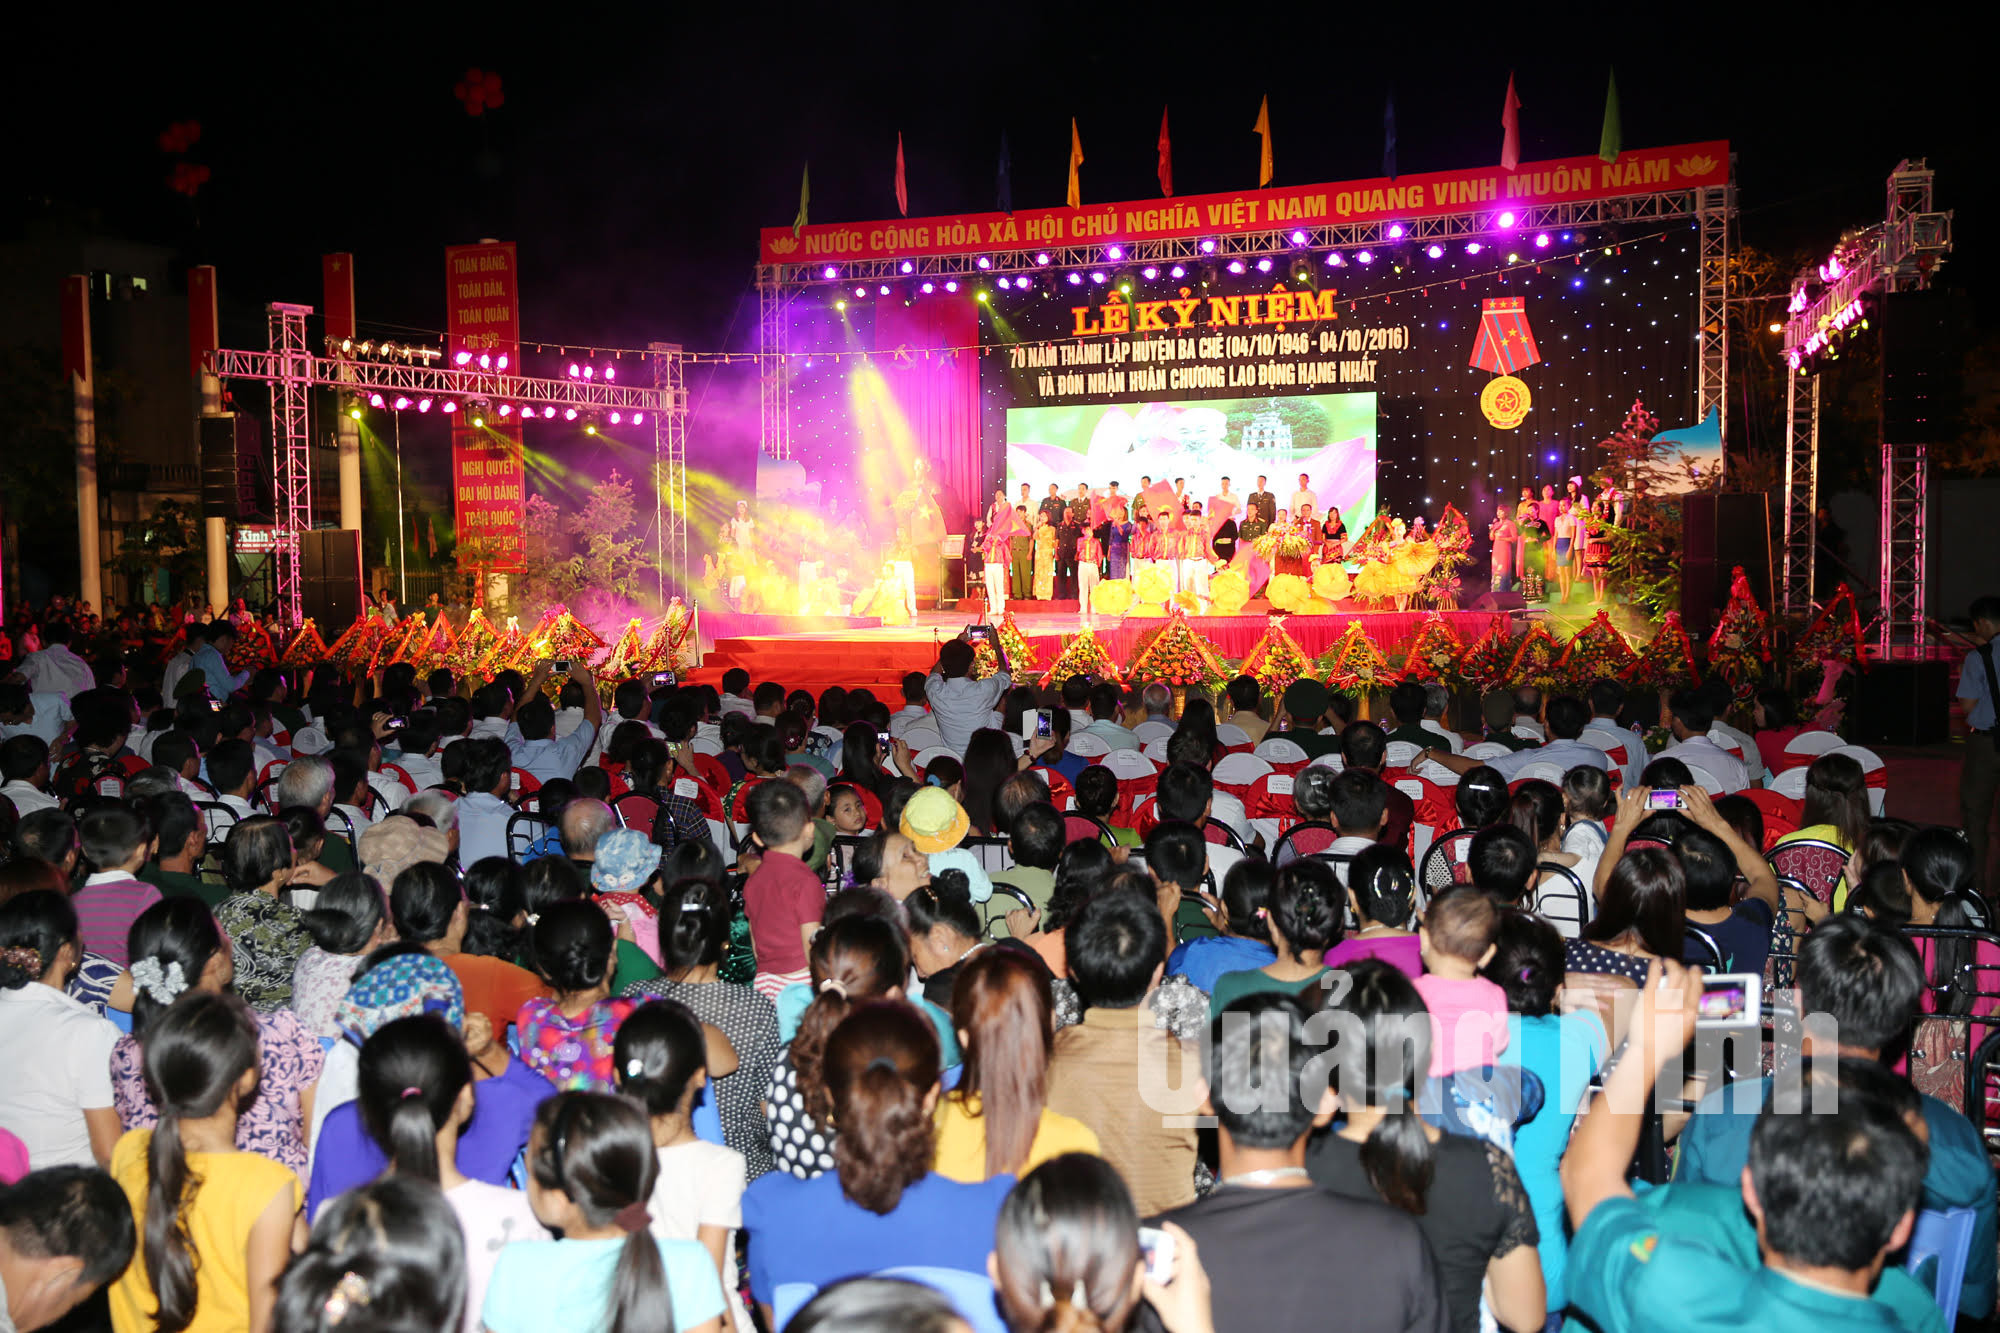 Đông đảo người dân huyện Ba Chẽ có mặt tham gia lễ kỷ niệm.